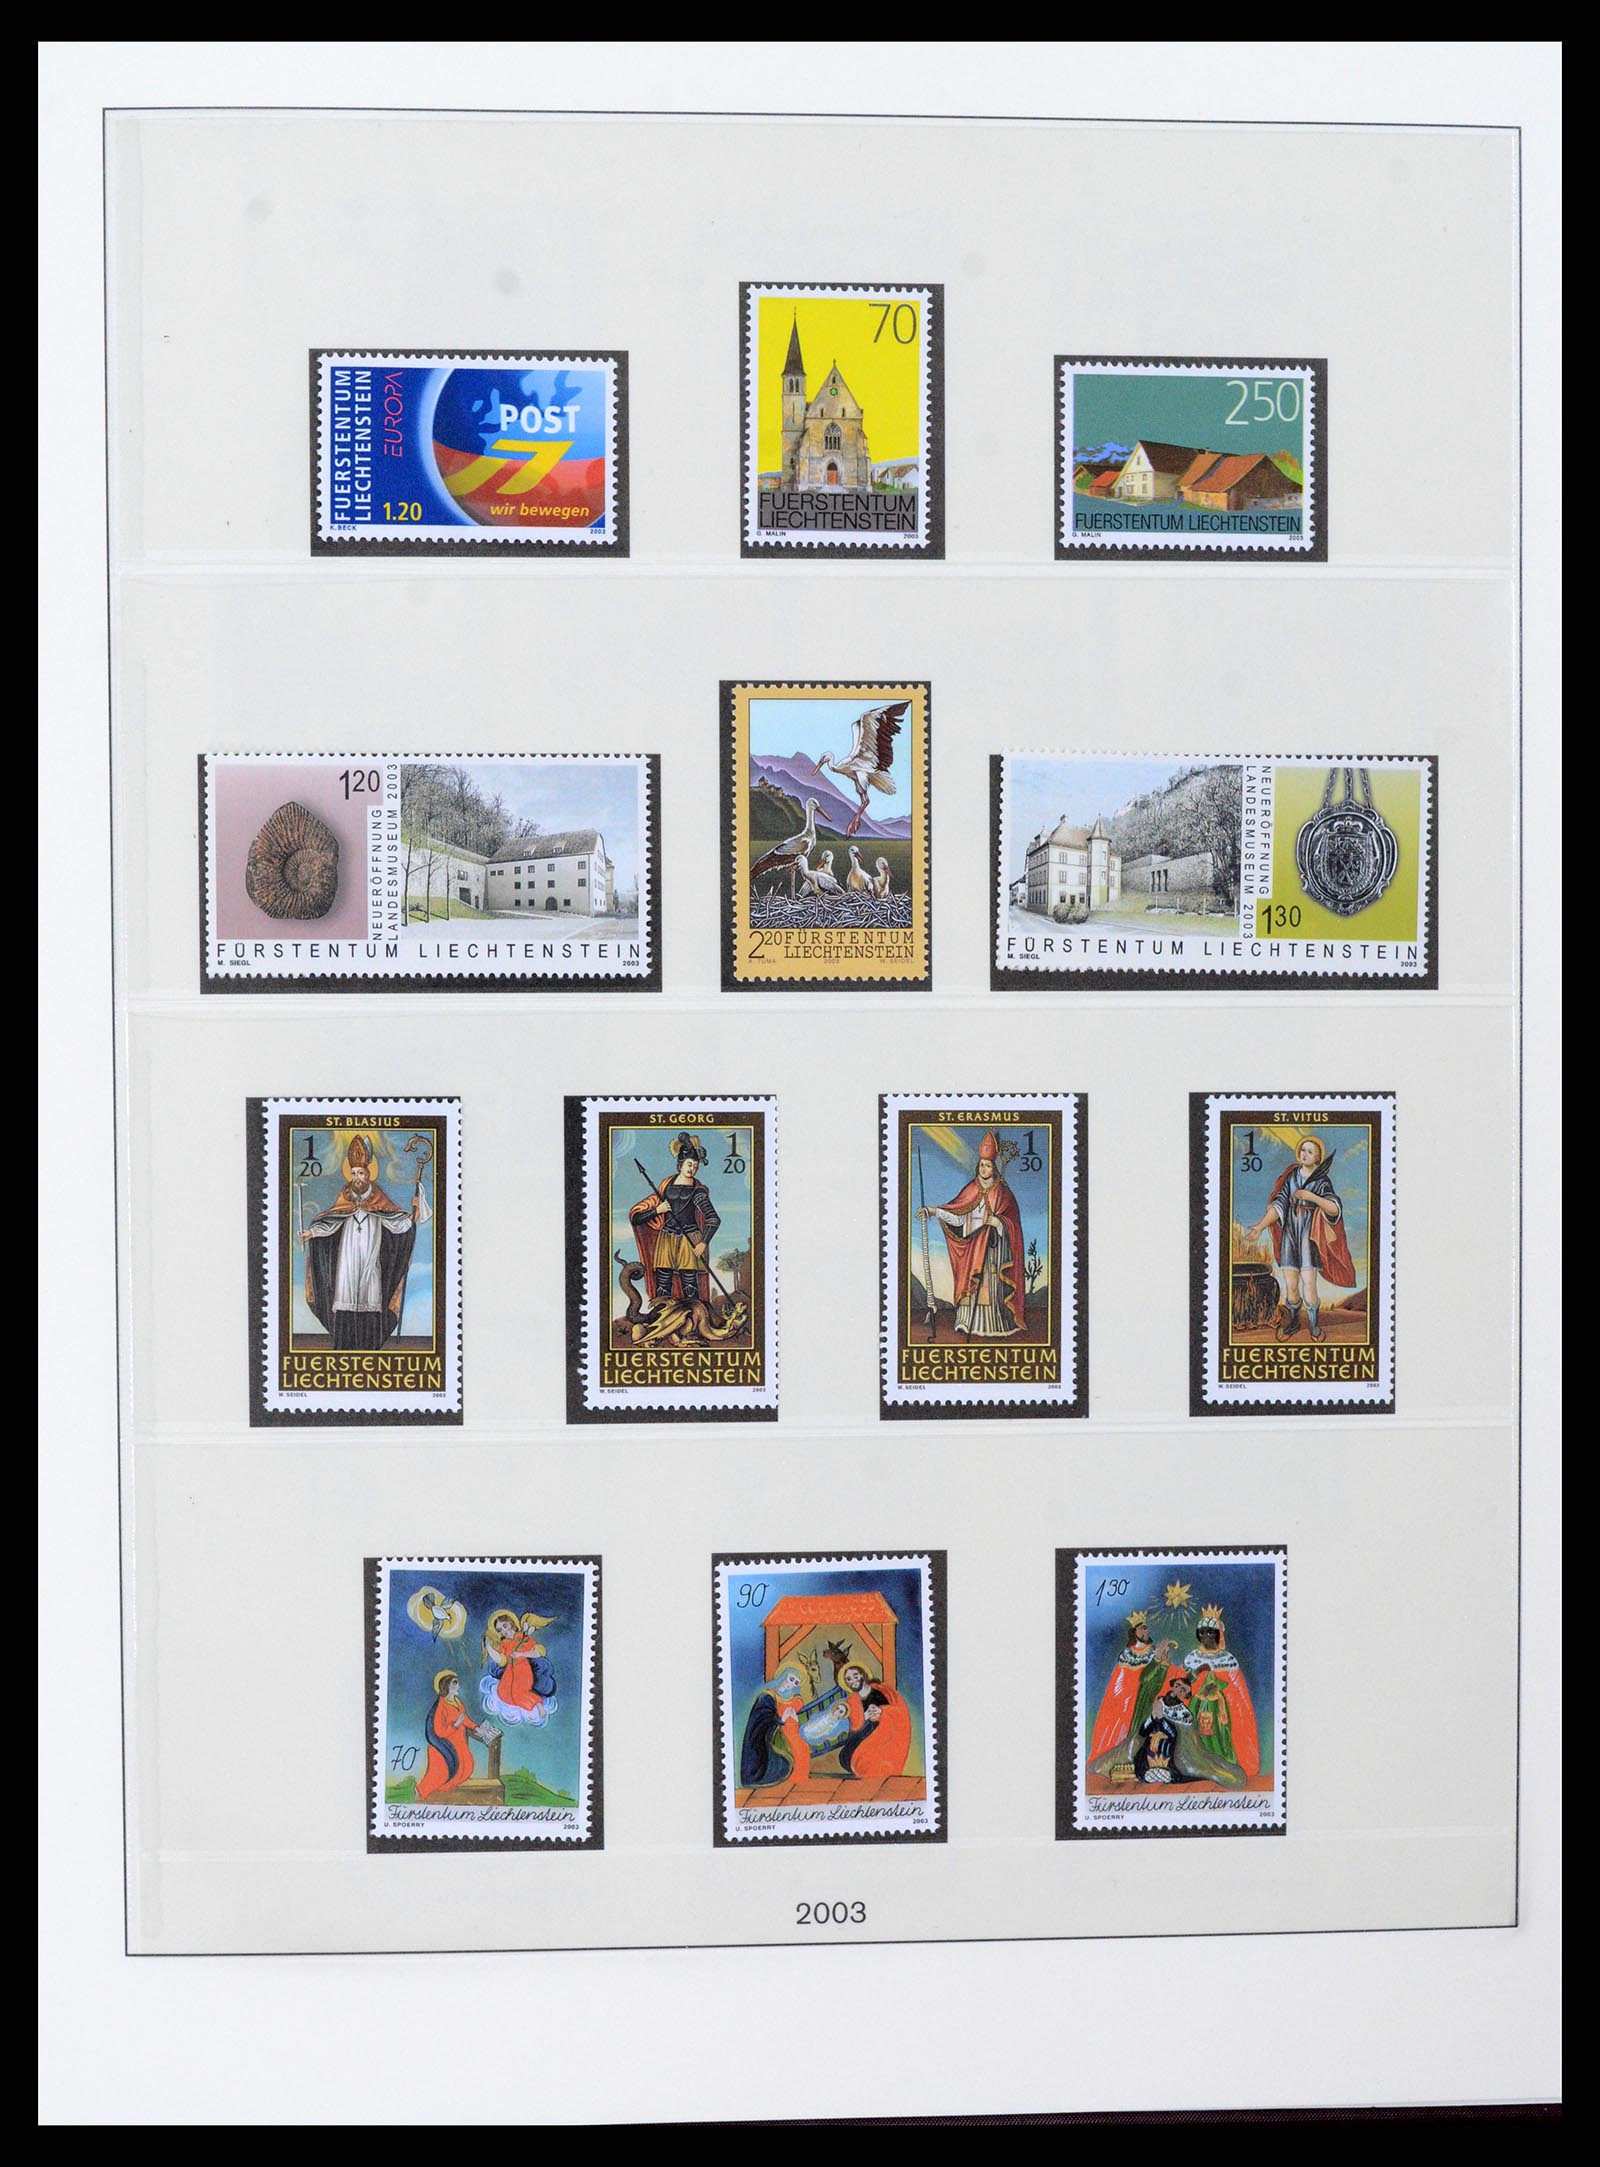 37295 133 - Stamp collection 37295 Liechtenstein 1912-2009.